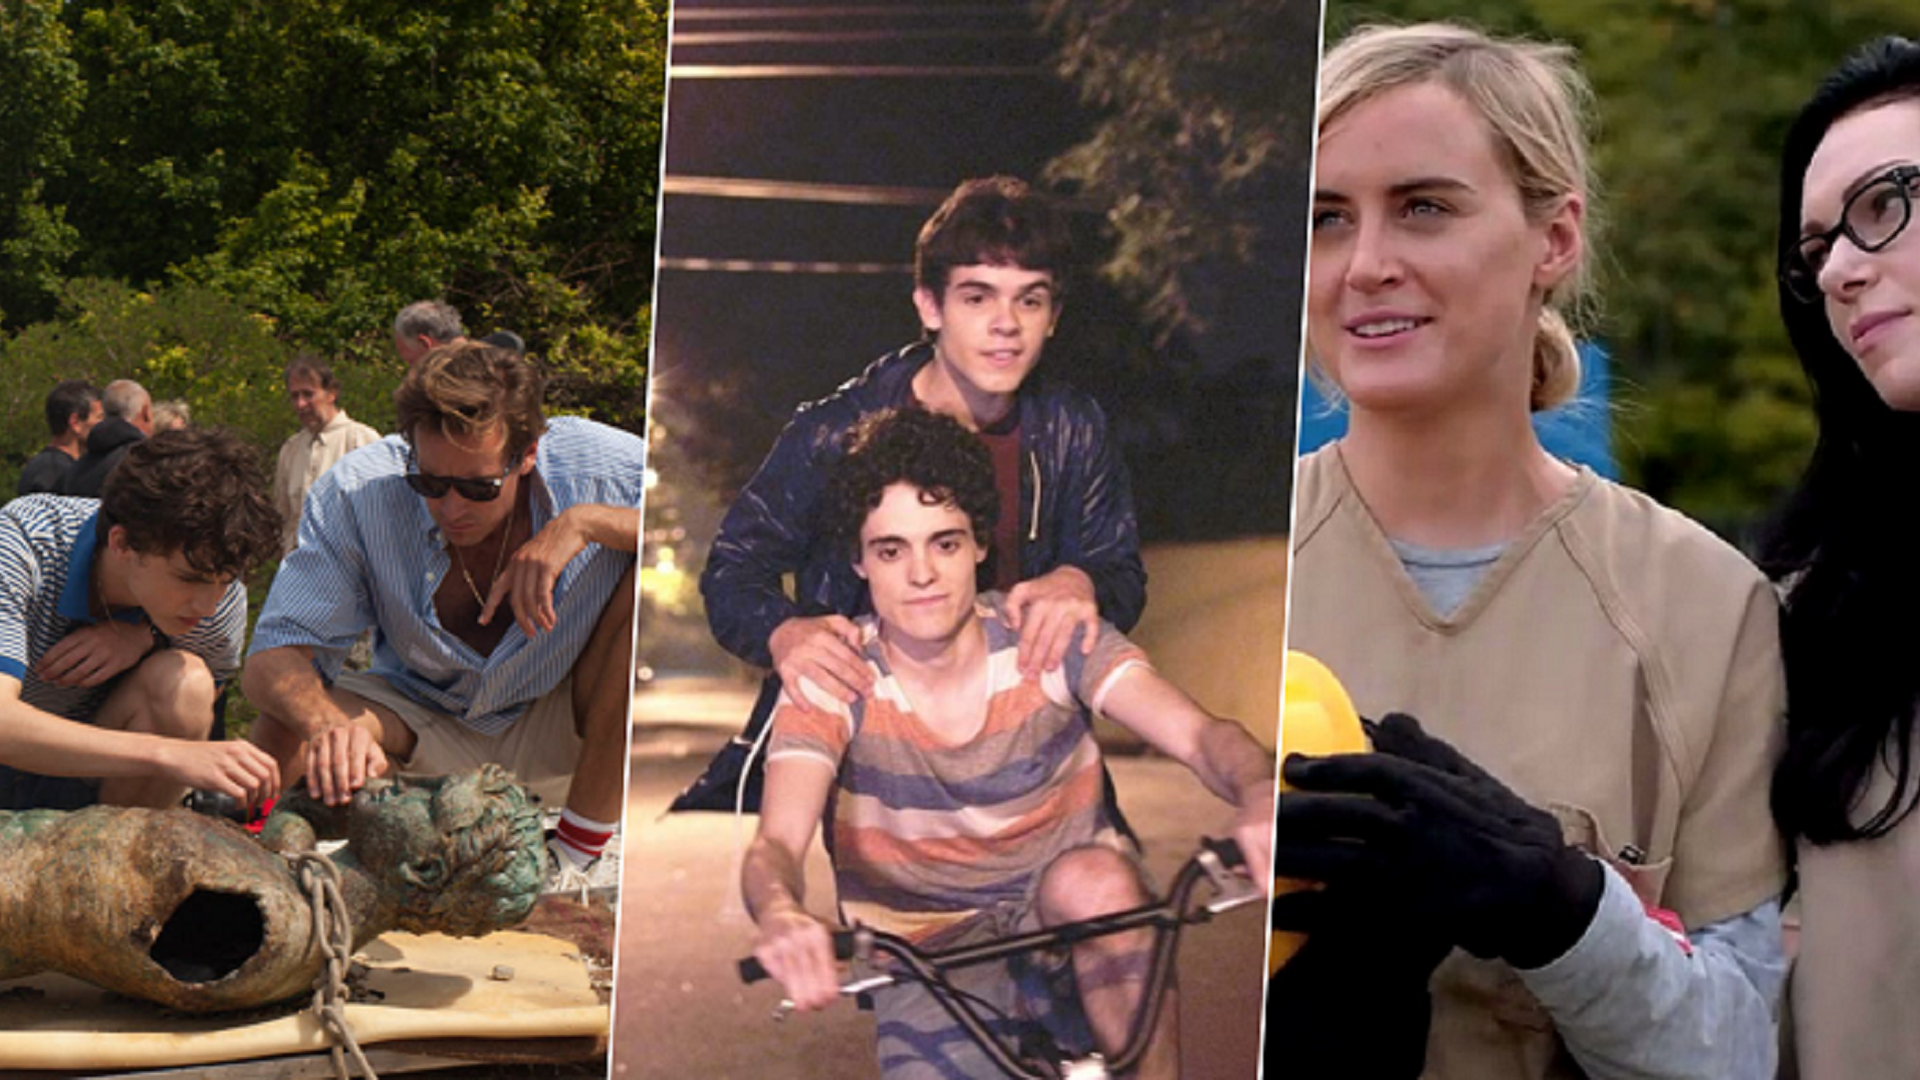 TudoTV: 15 melhores séries com personagens LGBTQIA+ na Netflix